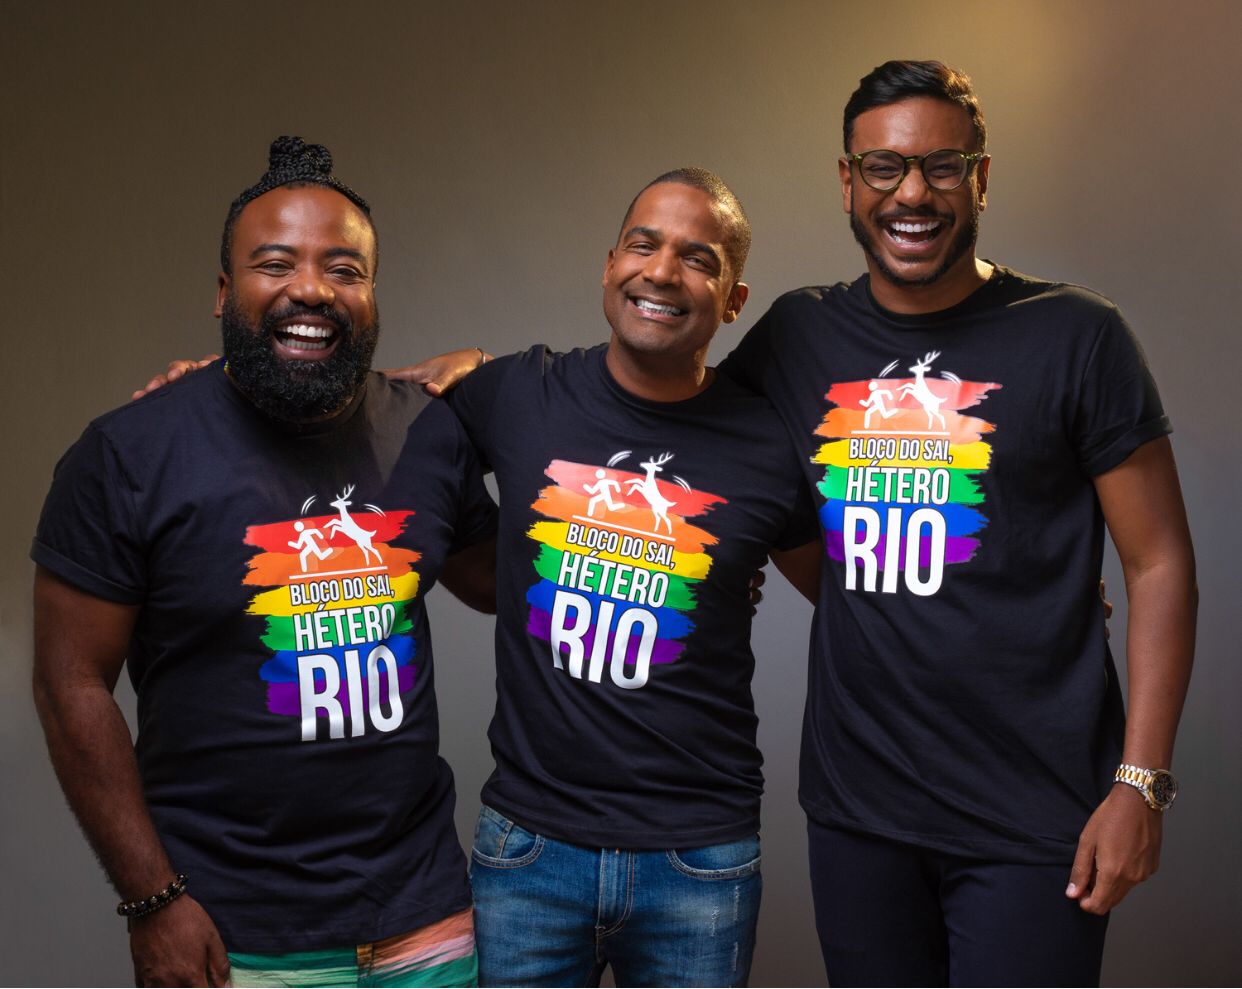 Maior Carnaval LGBTQIA+do Brasil, ‘Bloco do Sai, Hétero!’ acerta nova diretoria executiva